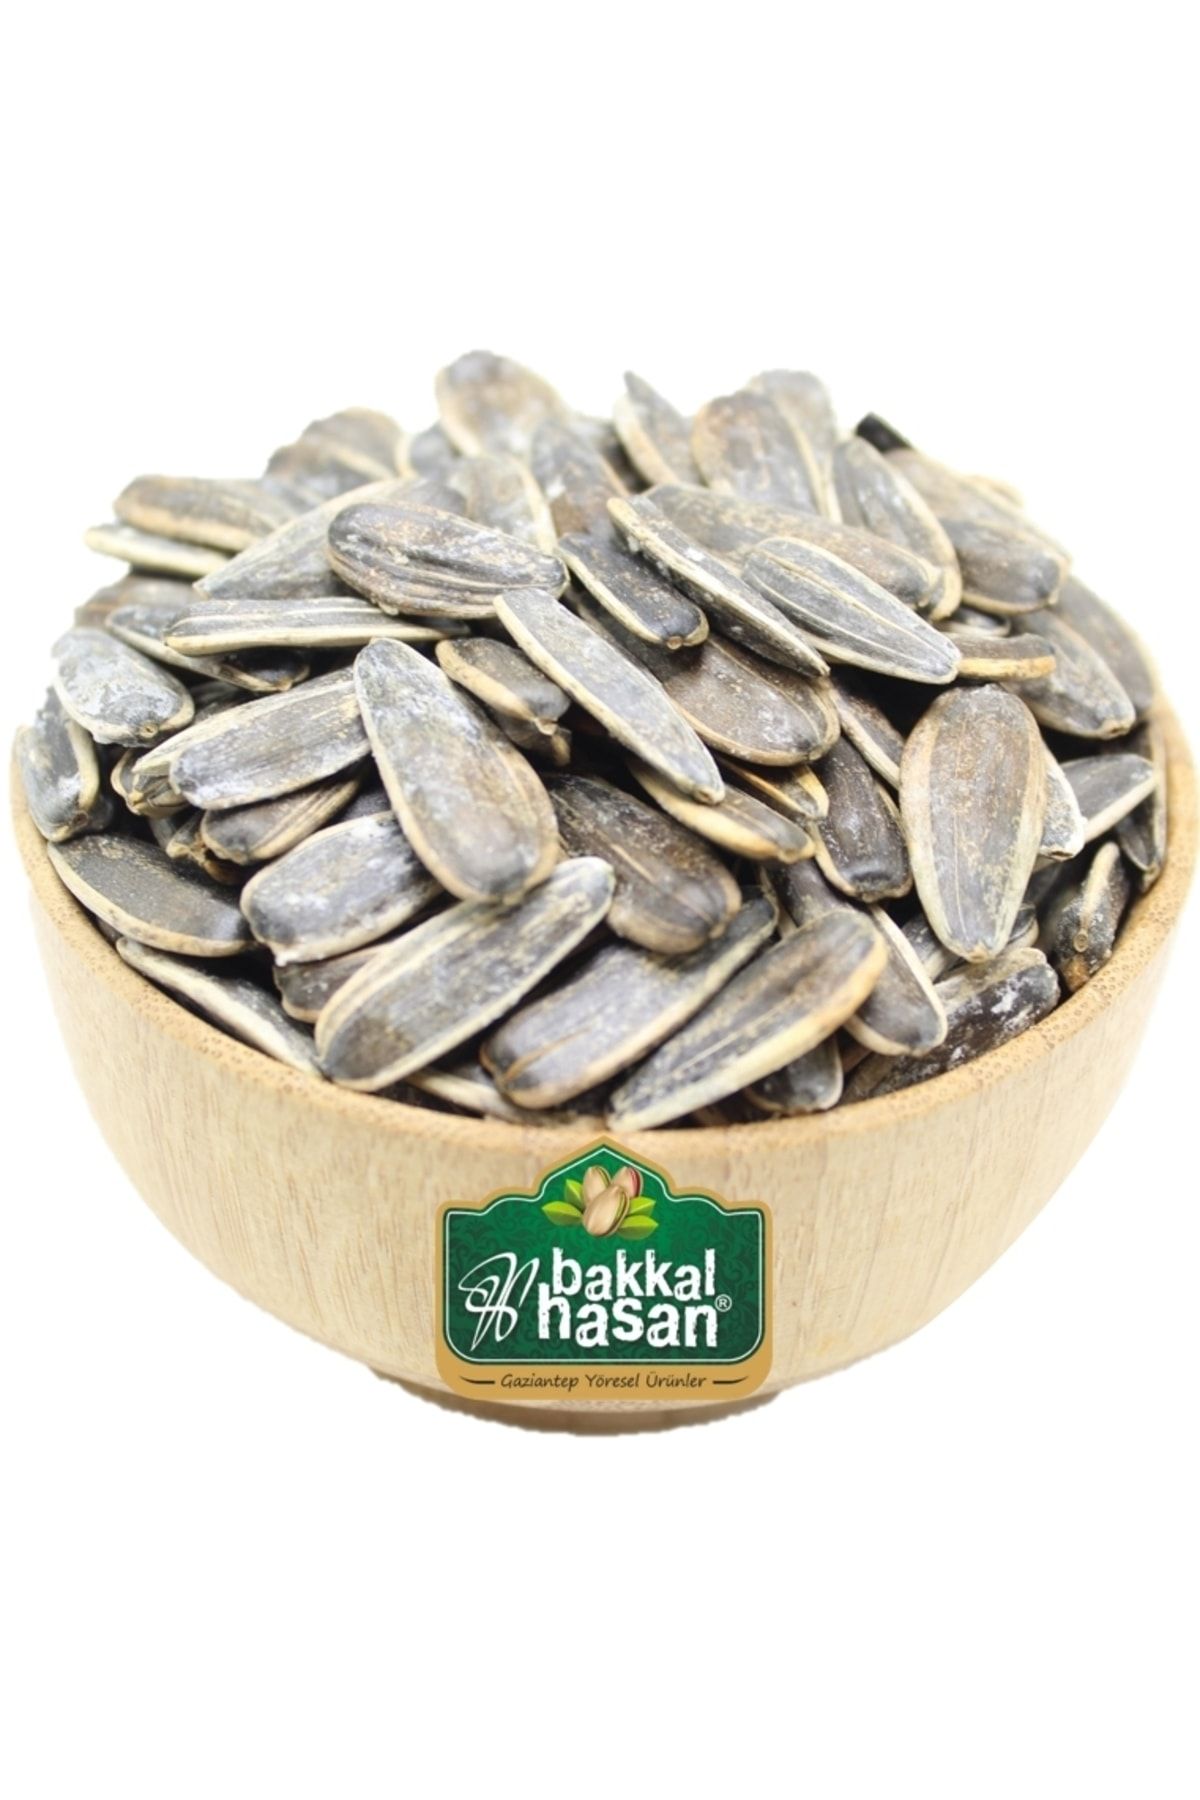 bakkal hasan Dakota Kavrulmuş Tuzlu - 10 Kg